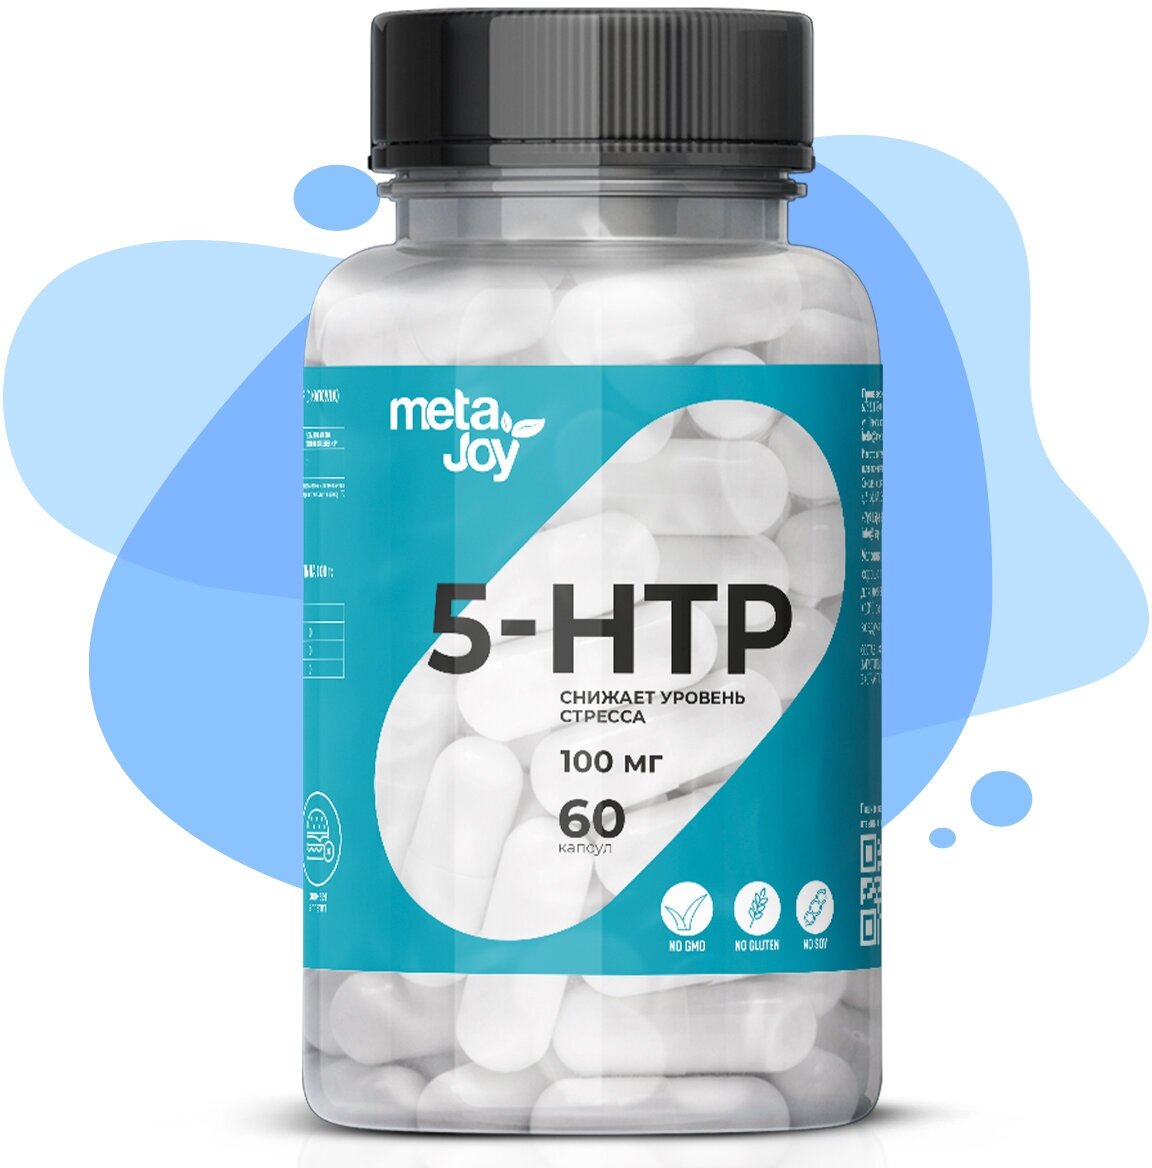 MetaJoy 5-HTP 60 caps